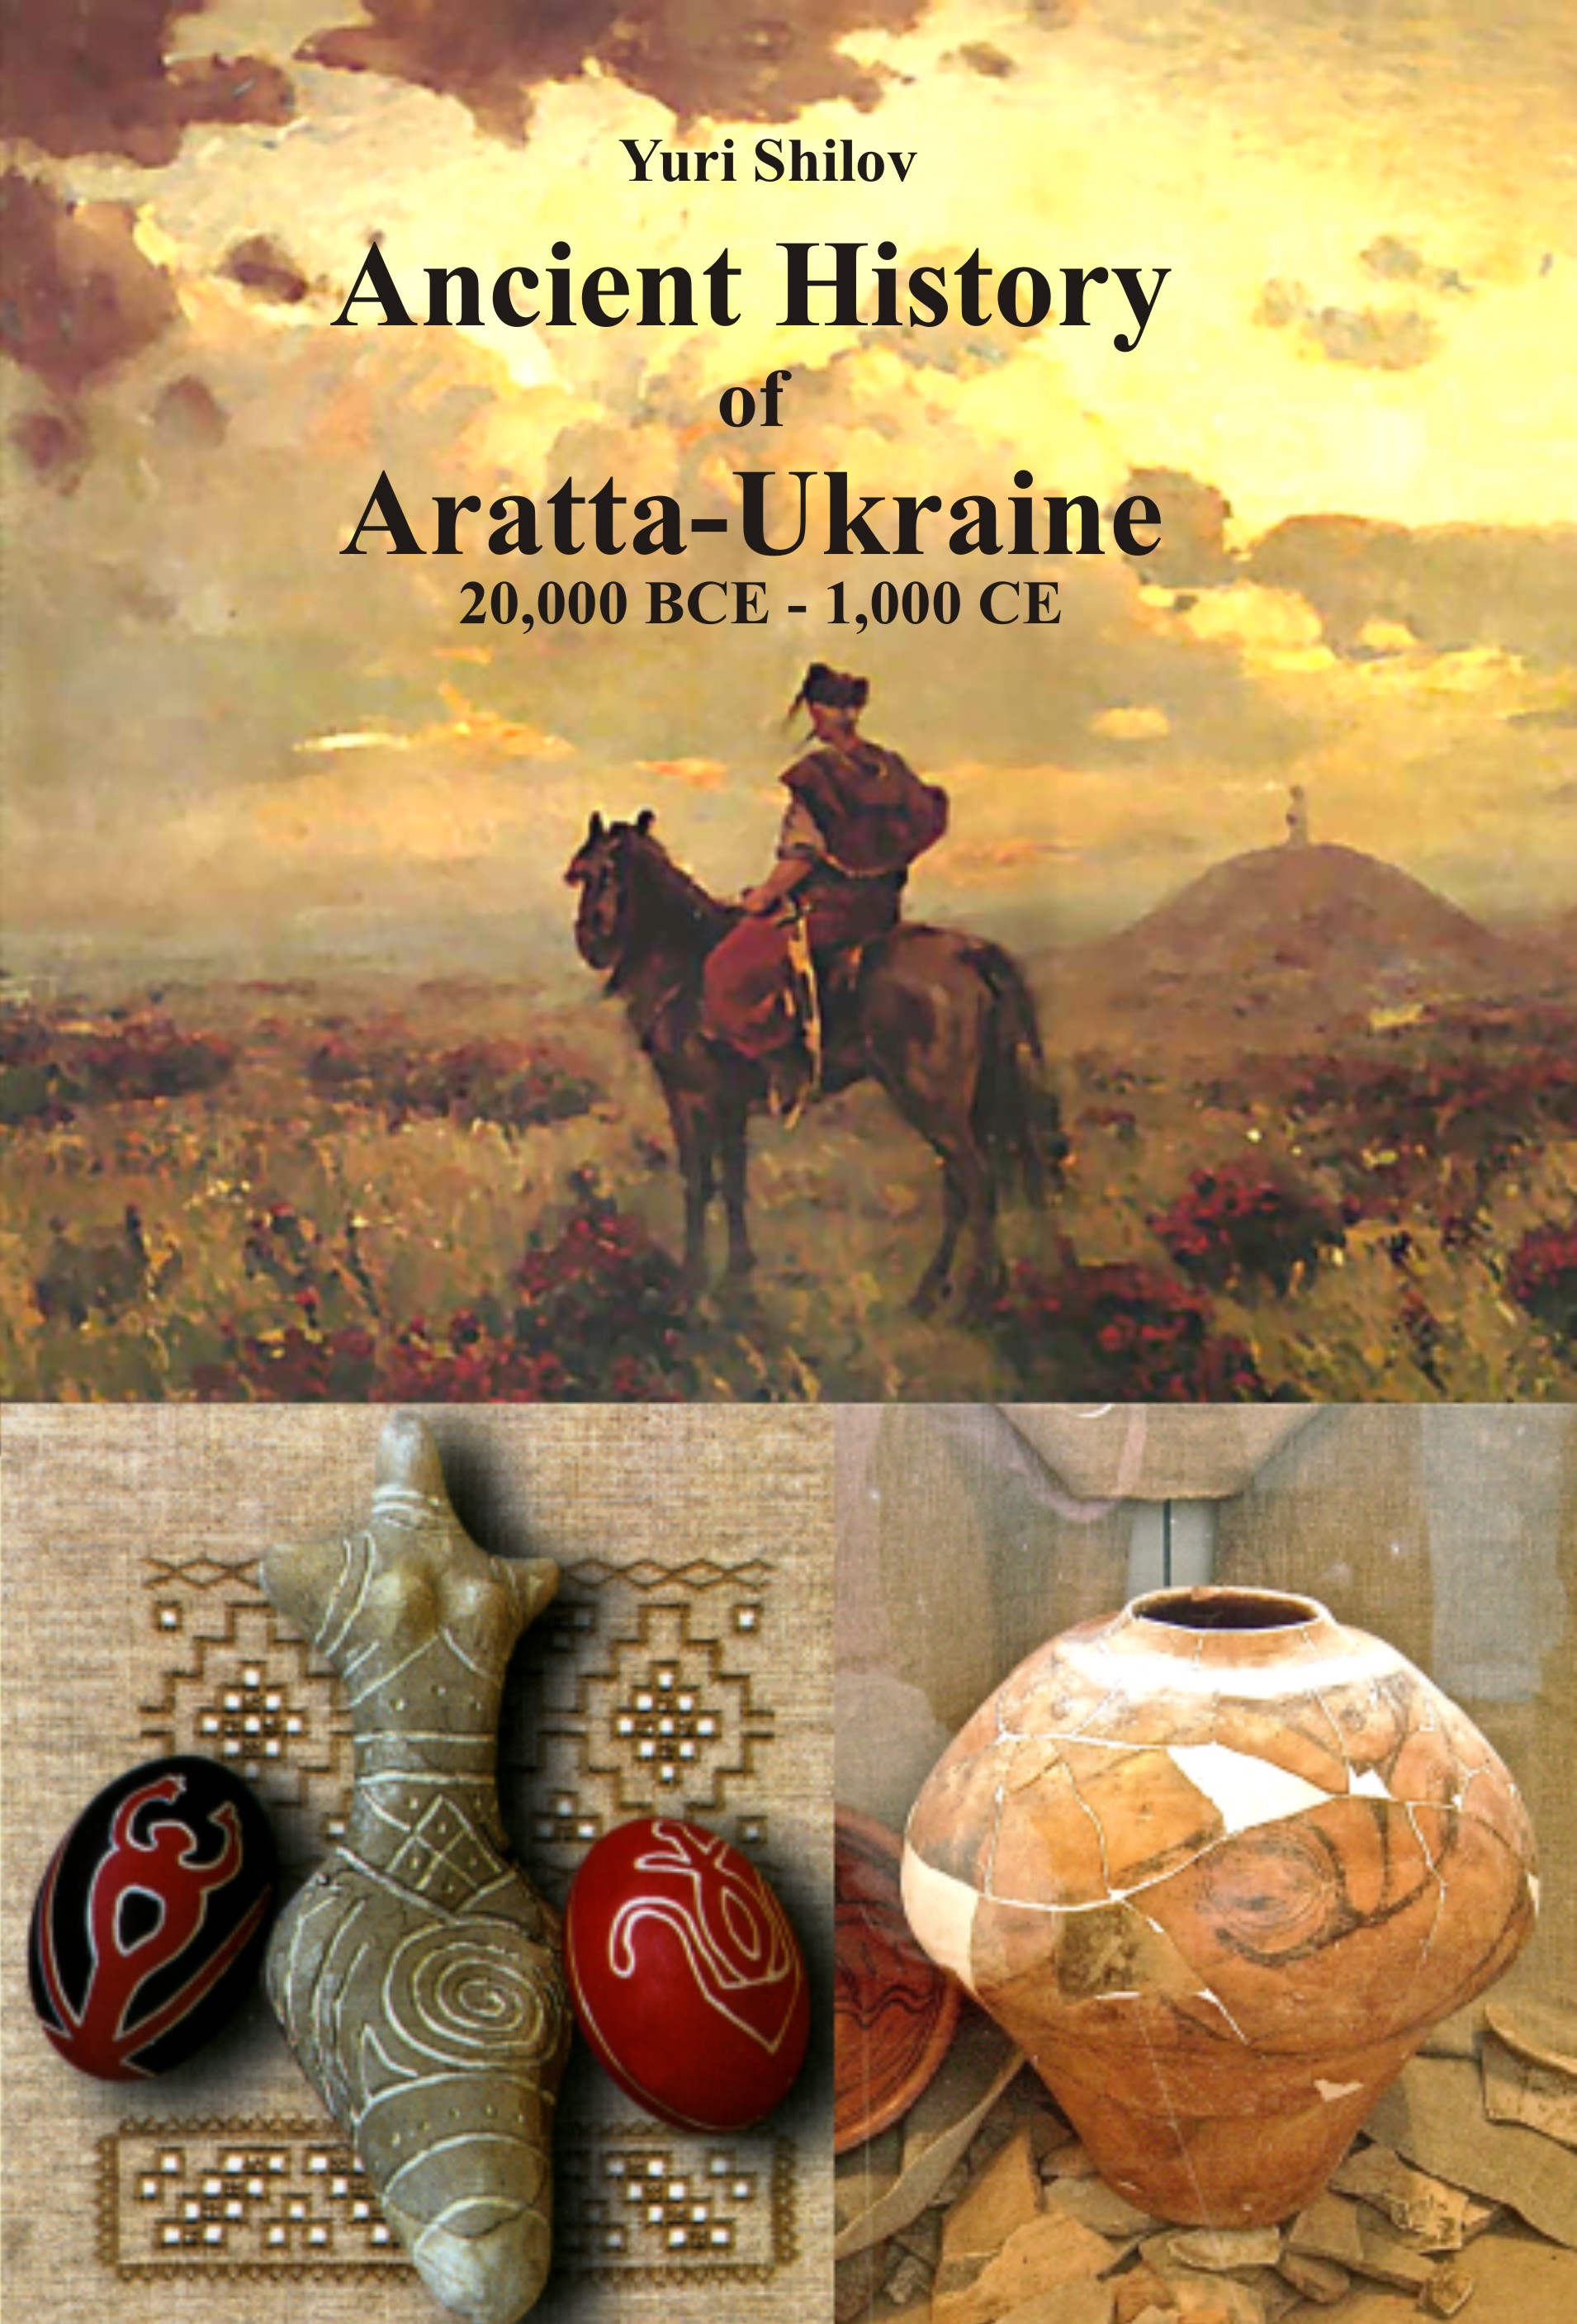 Aratta-Ukraine front cover